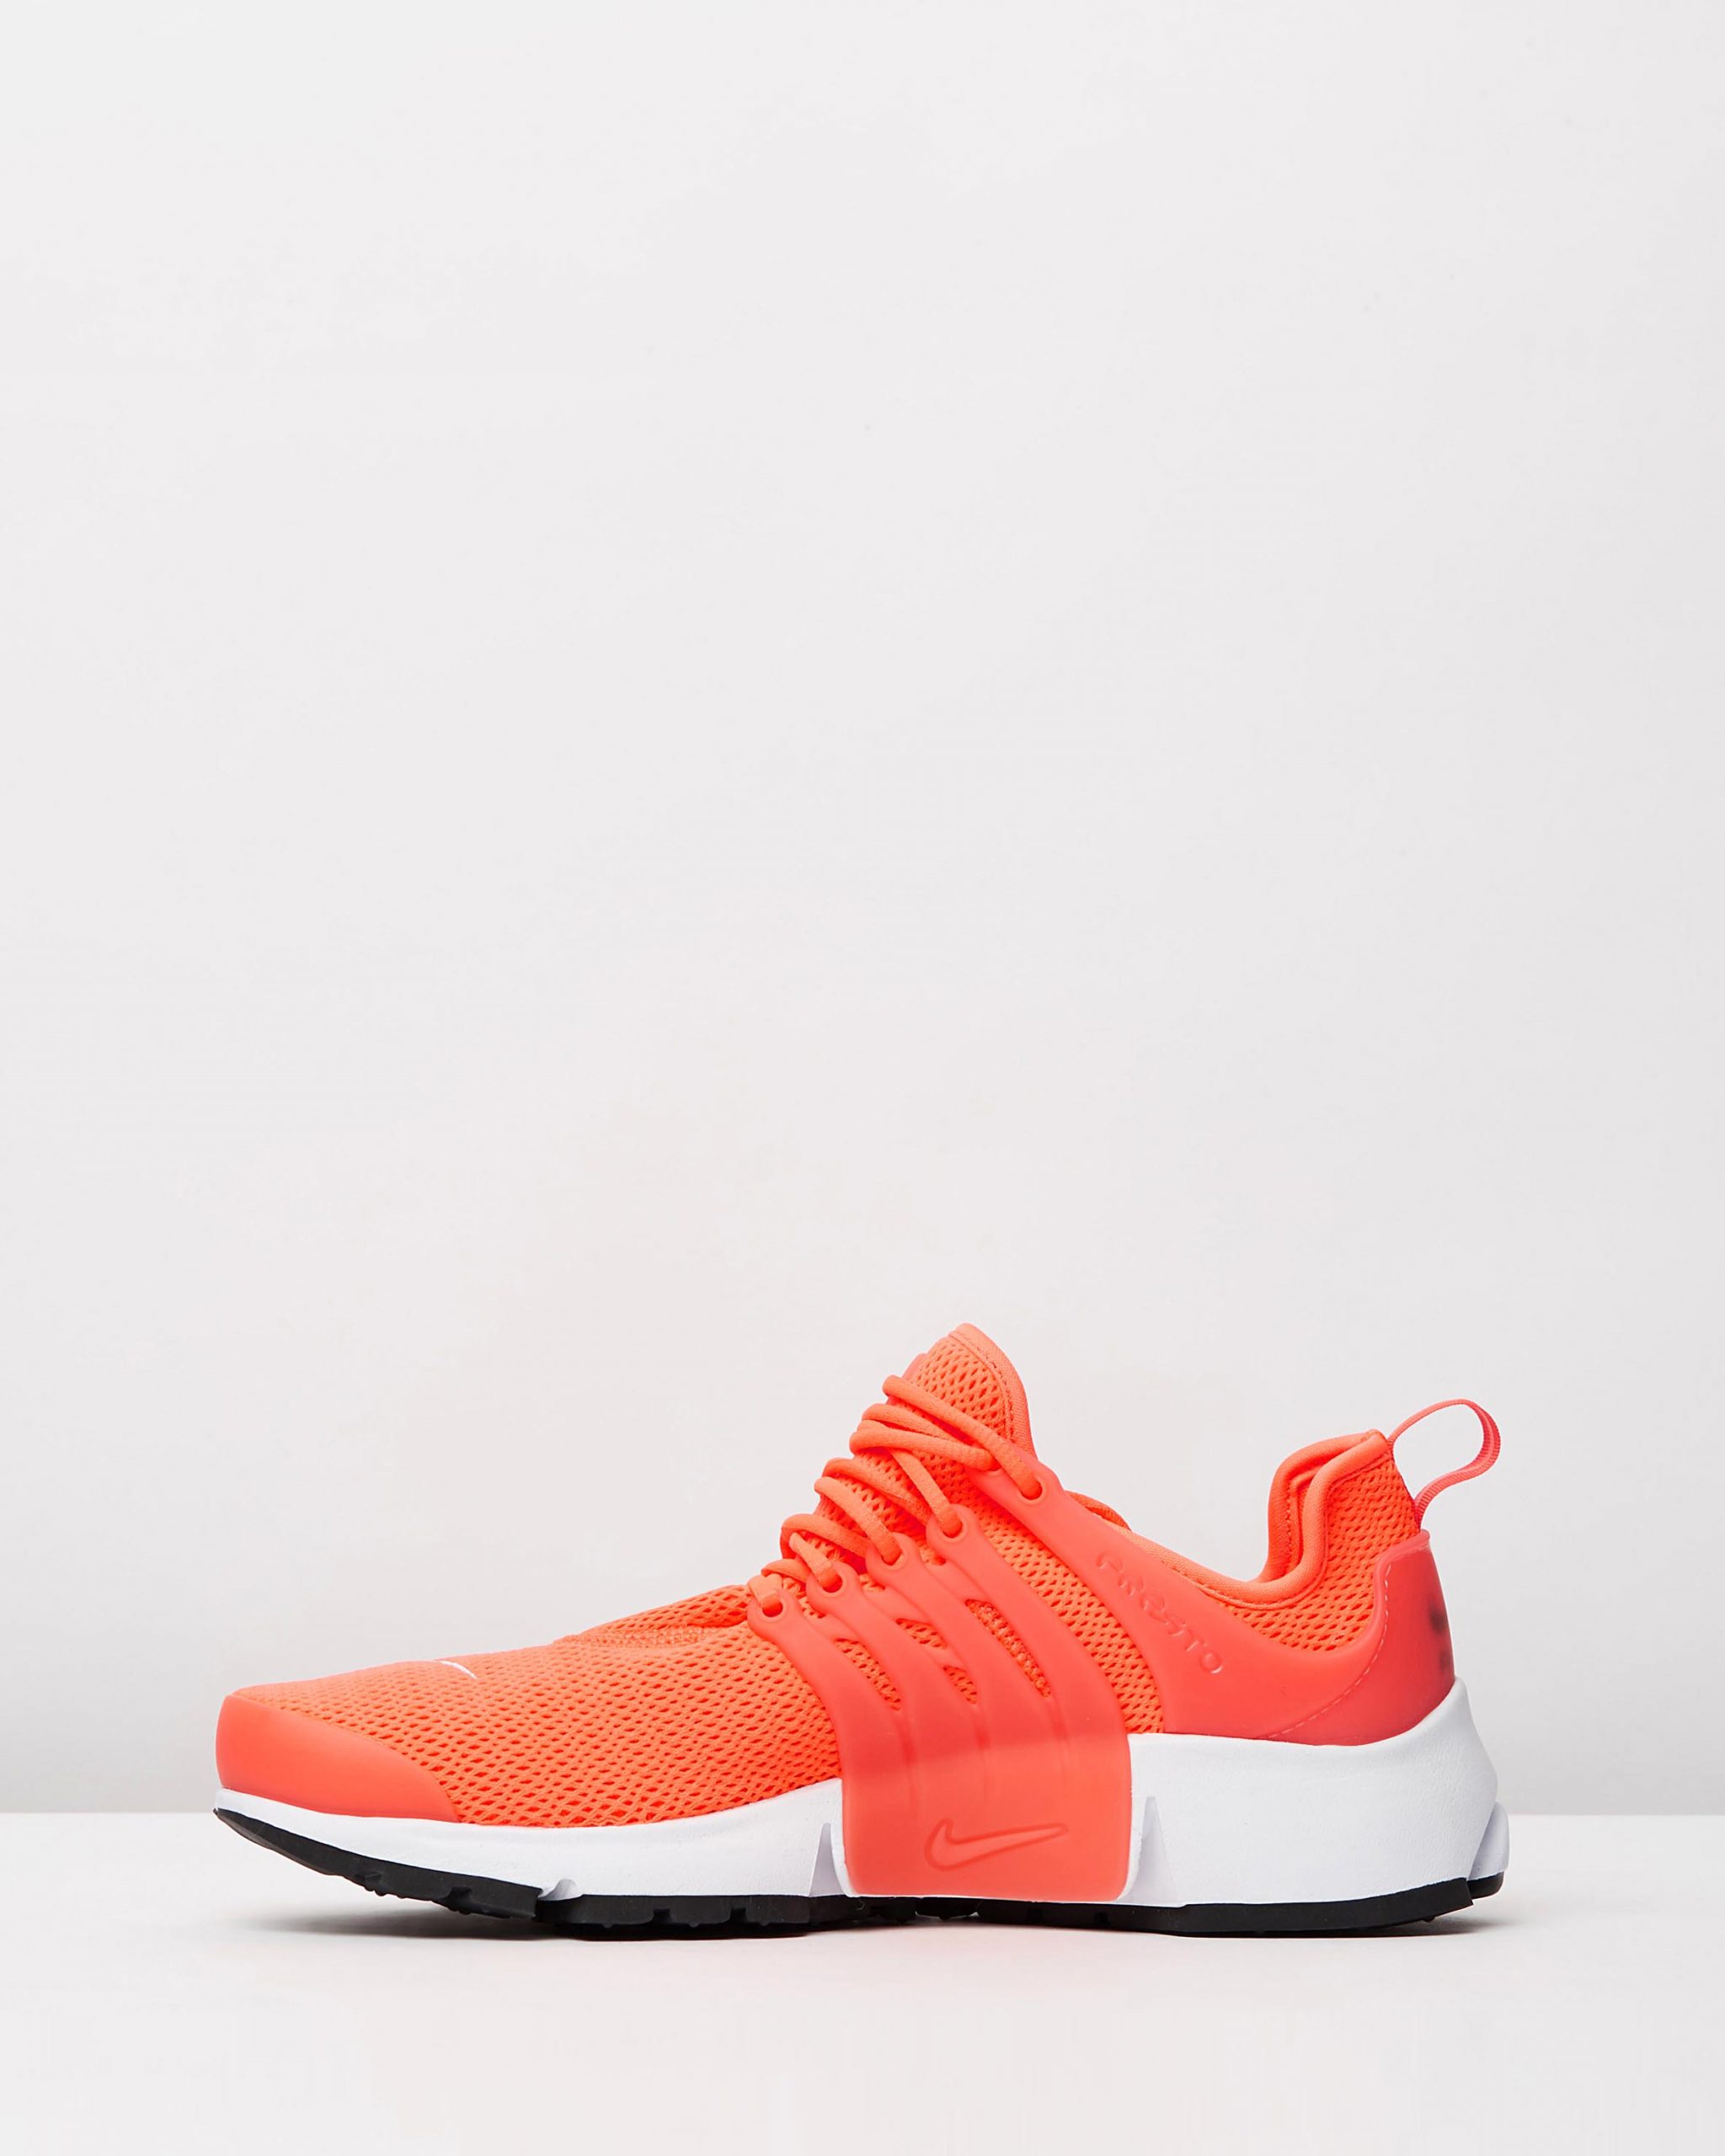 neon orange sneakers